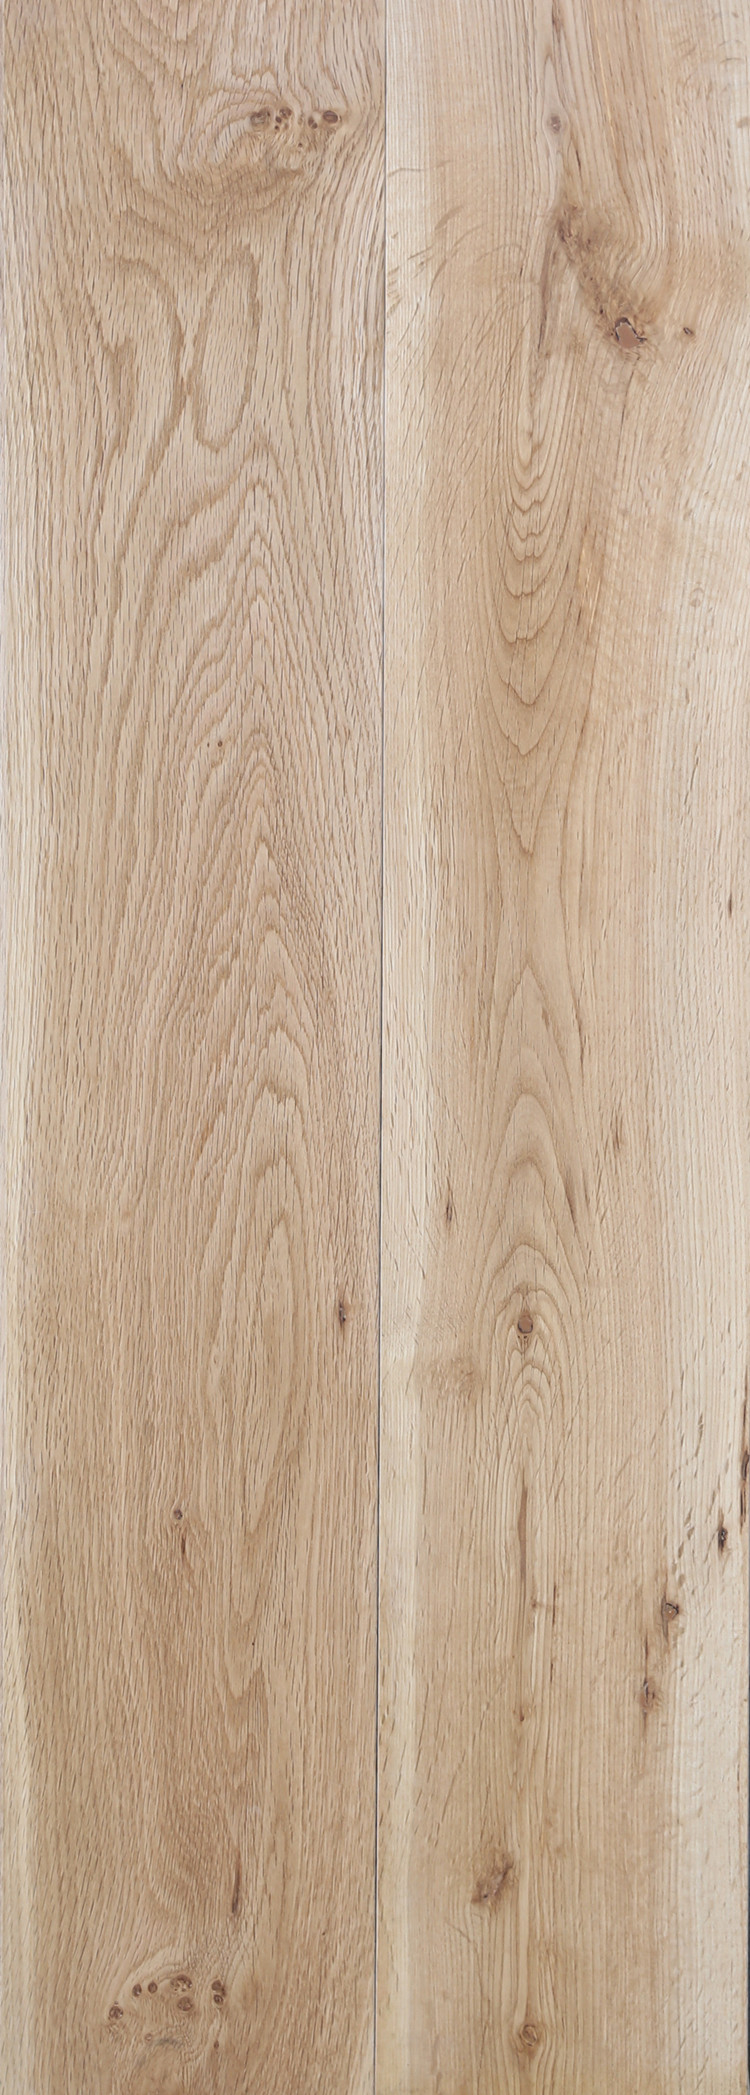 S69-橡木/柞木实木地板